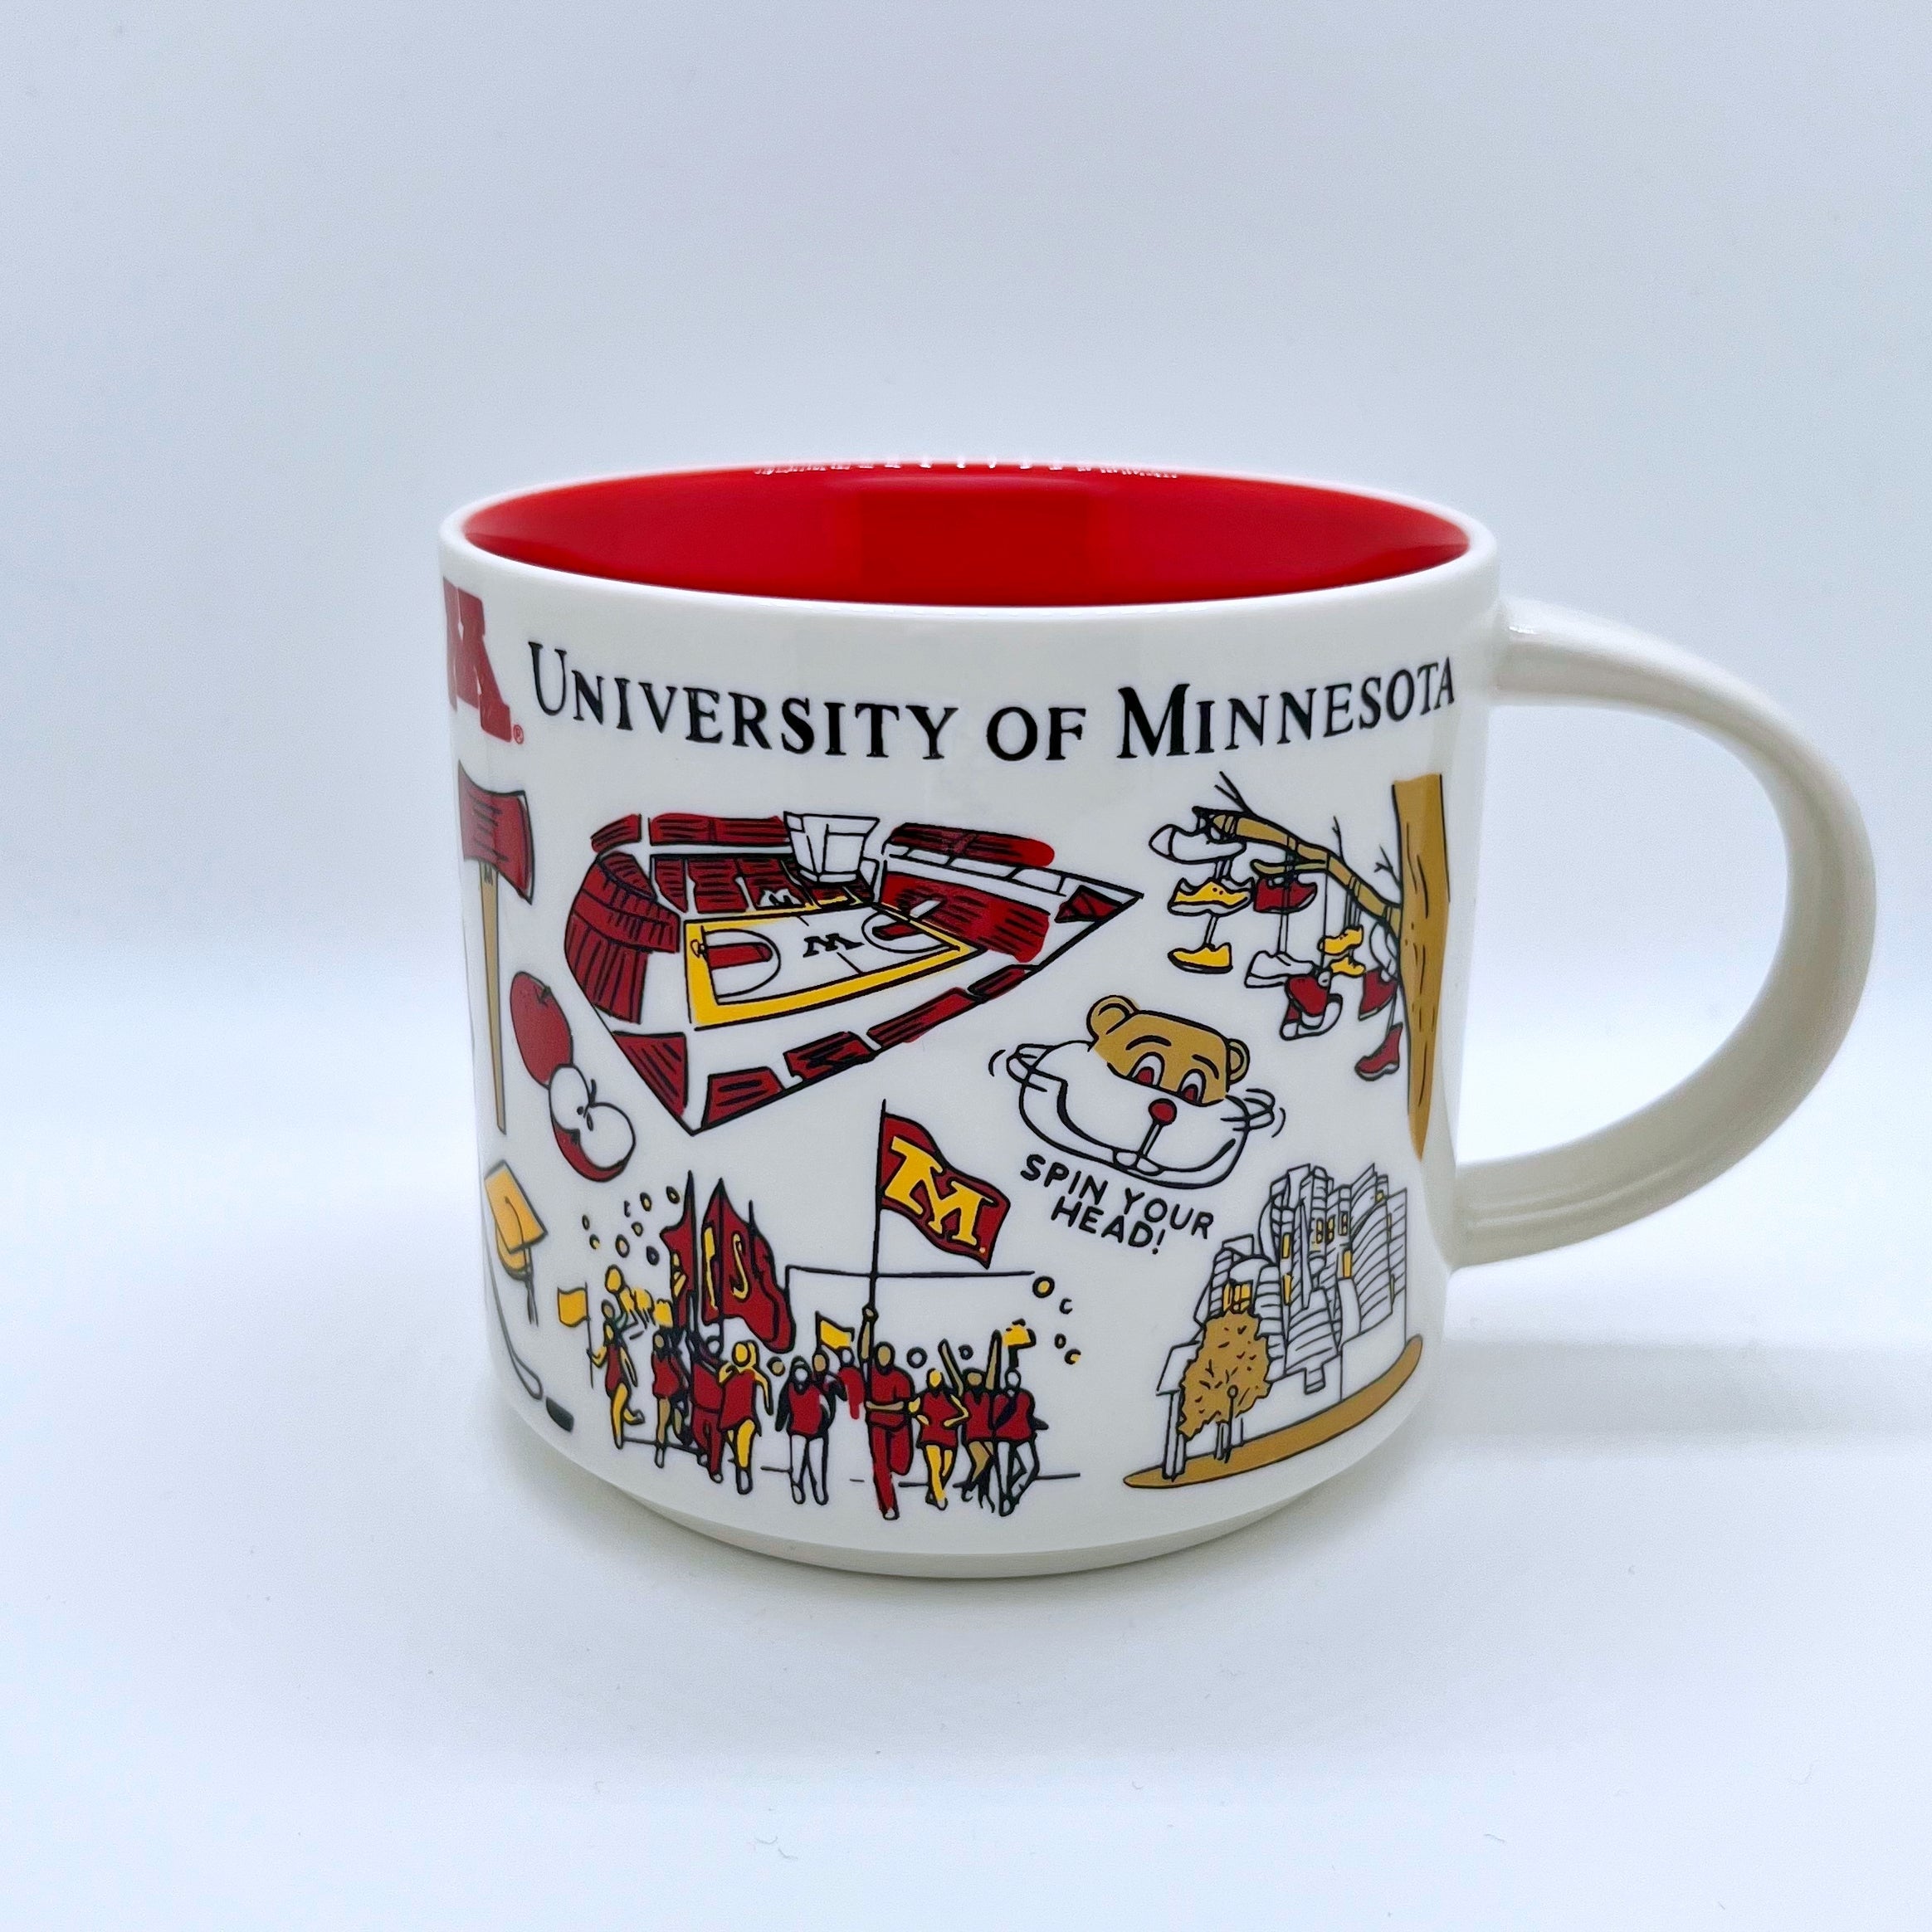 Starbucks 🇺🇸 University of Minnesota Kaffee Tasse - The Coffee Mug Shop